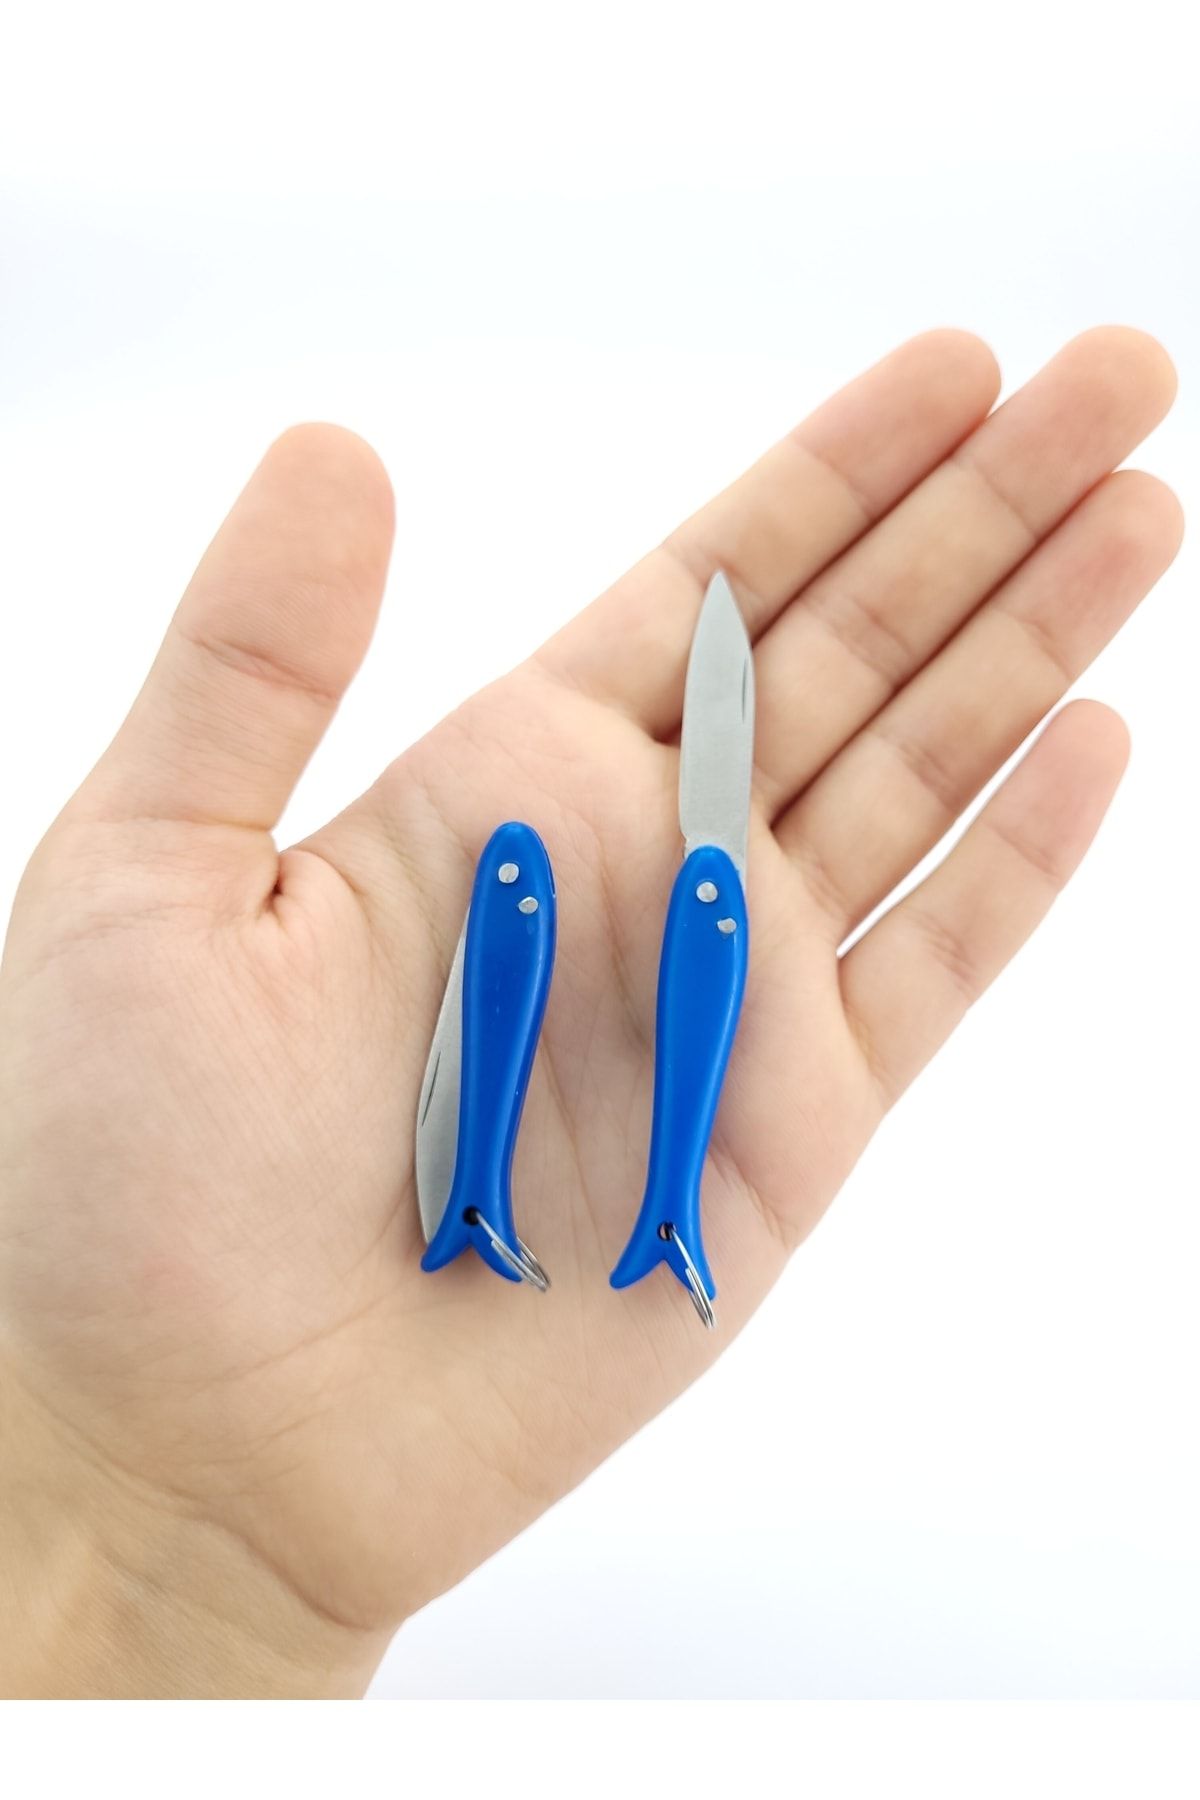 ALAVAN Anahtarlık Çakı Balık Çakı Mini Çakı Yatağan Bıçağı Cep Çakısı Erkek Hediyelik Çakı